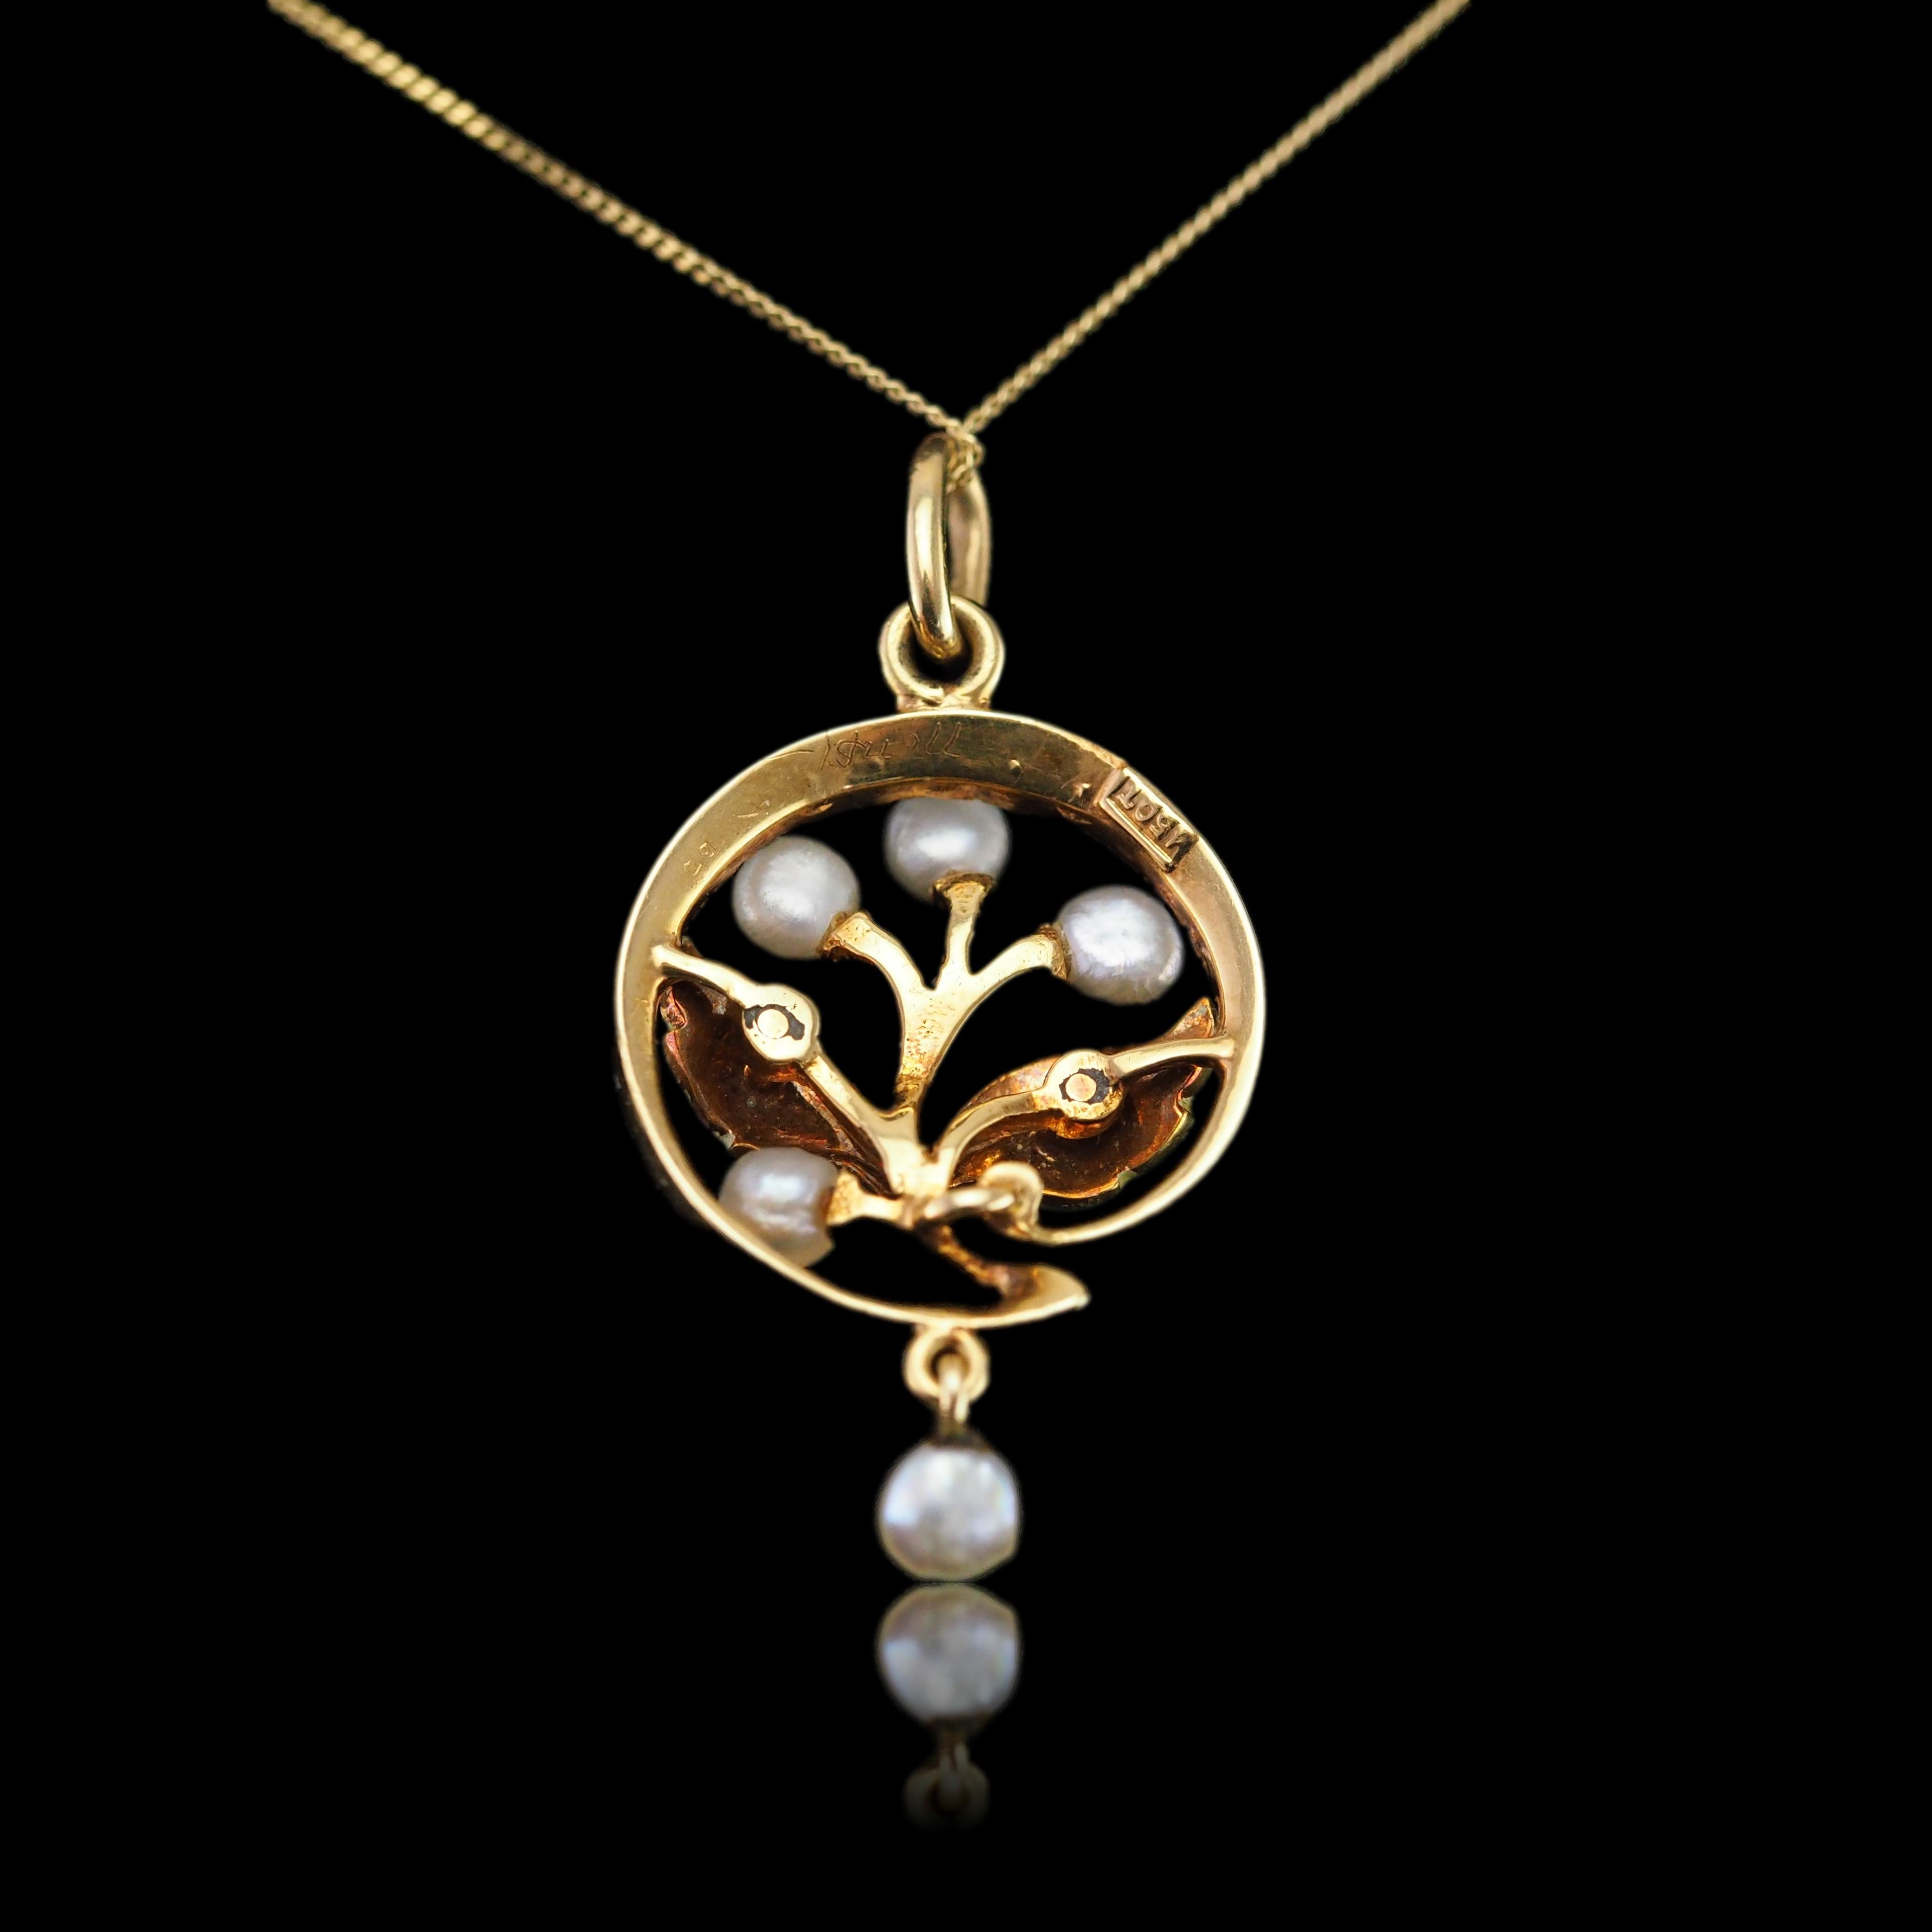 Antique Edwardian Pearl & Enamel Pendant Necklace 15K Gold Art Nouveau c.1910 For Sale 11